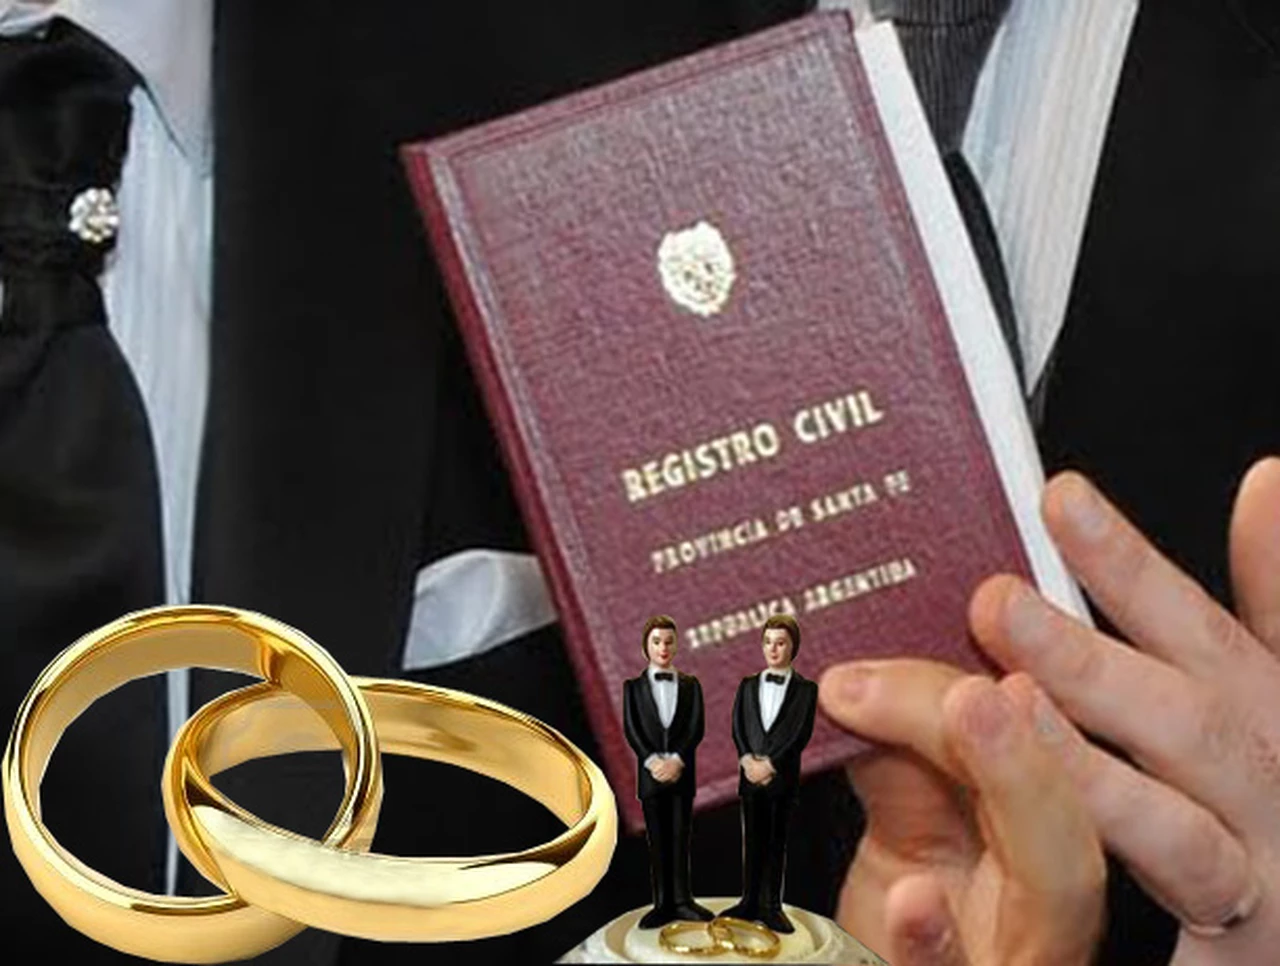 Matrimonio igualitario: una jueza pidió modificar el formulario de para pedir el divorcio